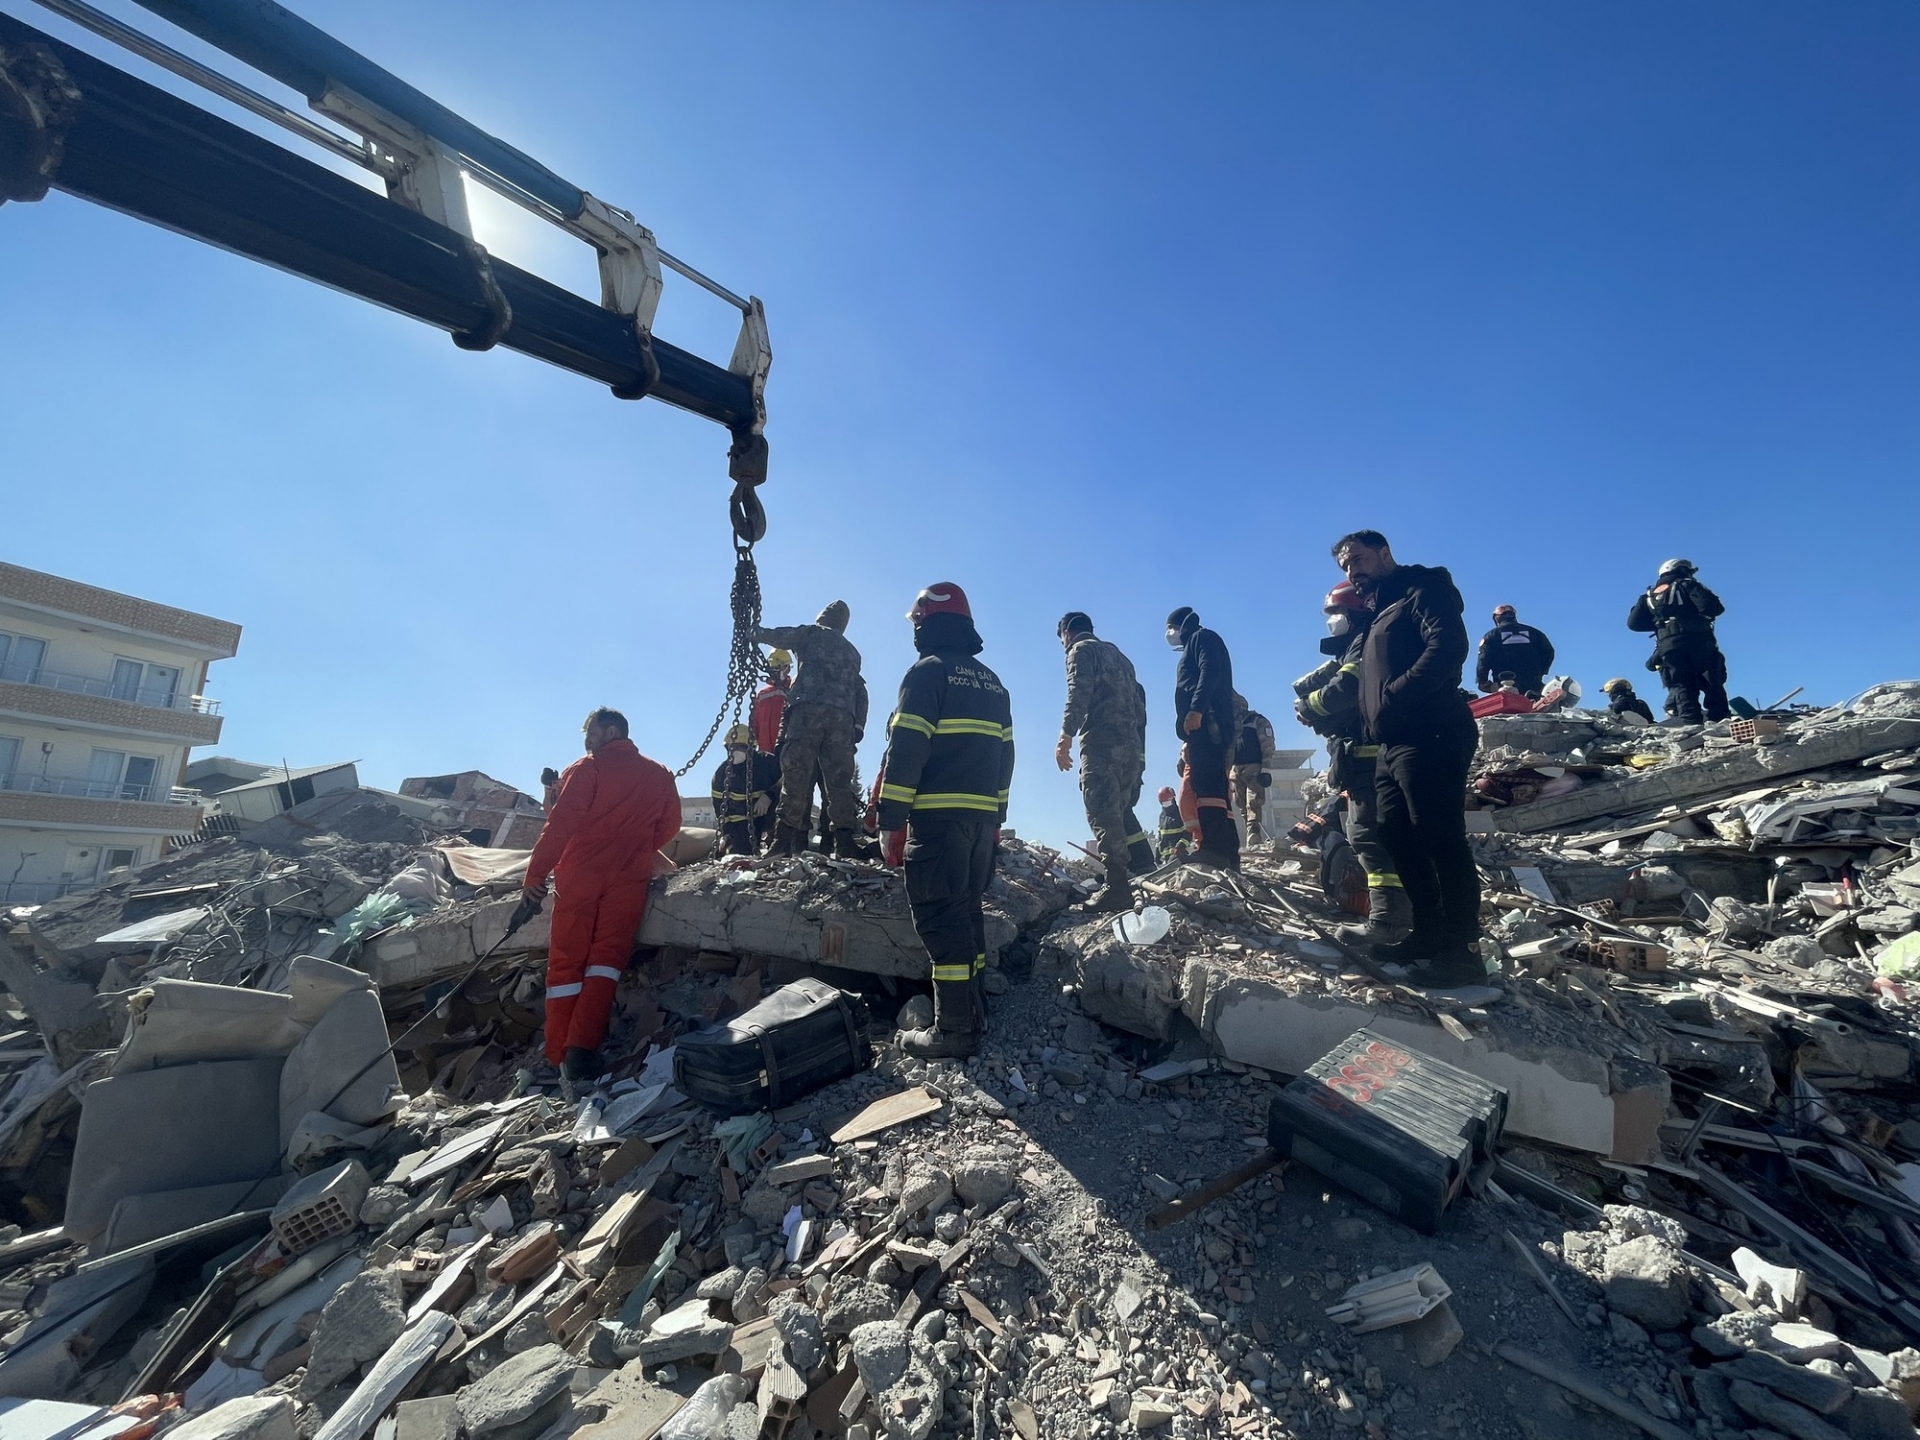 哈塔伊省是 2 月 6 日土耳其历史性地震中受灾最严重的地区之一。